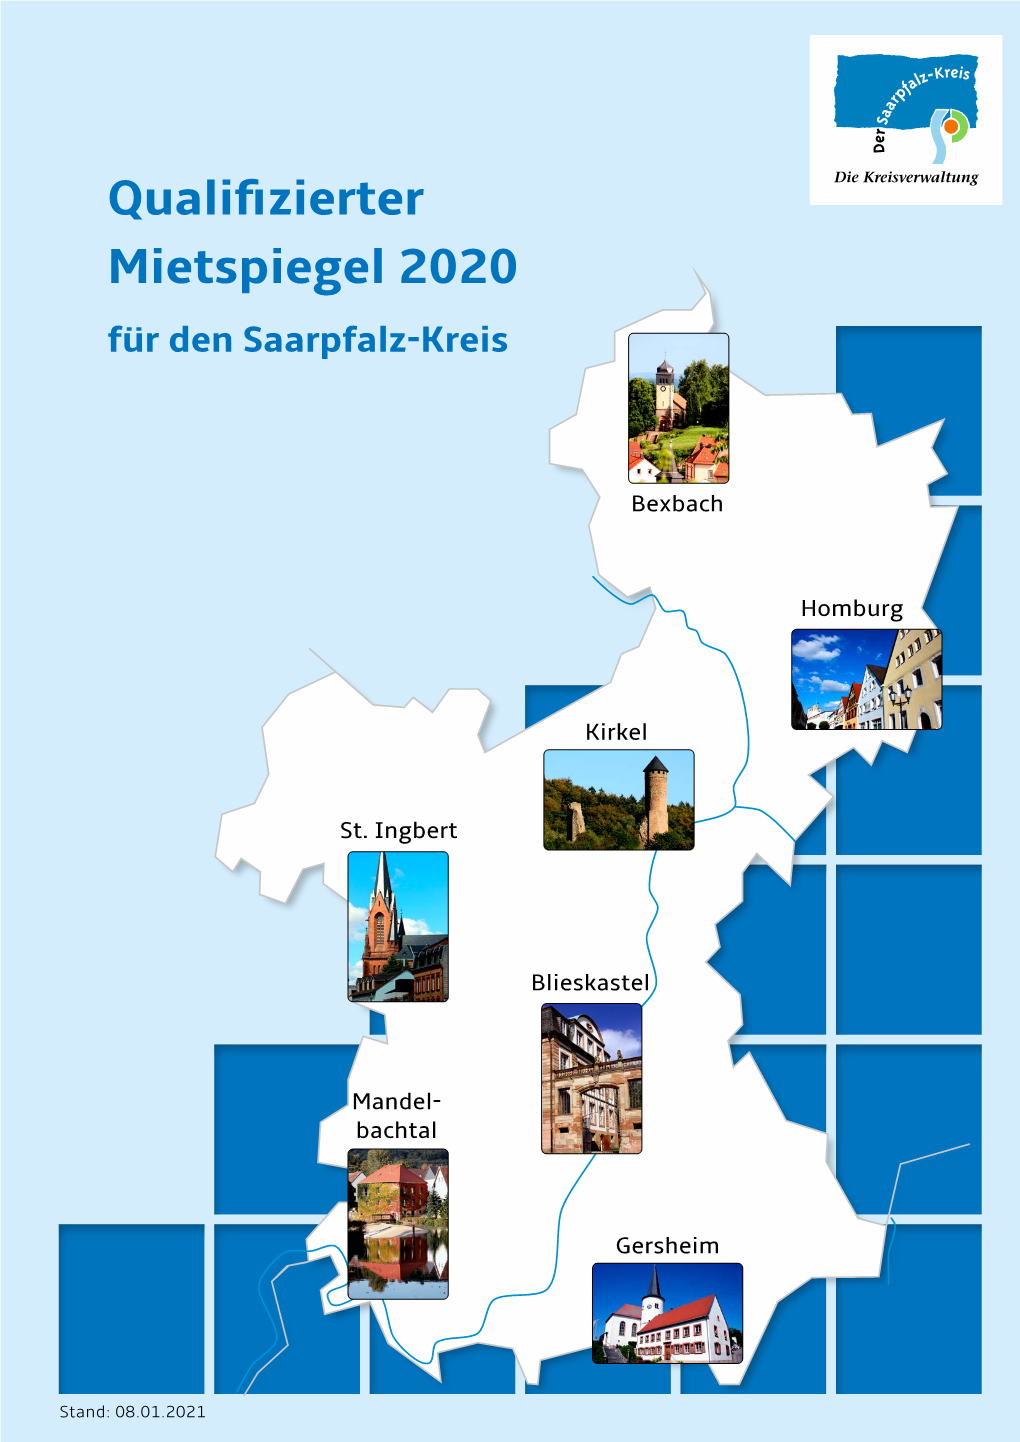 Qualifizierter Mietspiegel 2020 Für Den Saarpfalz-Kreis